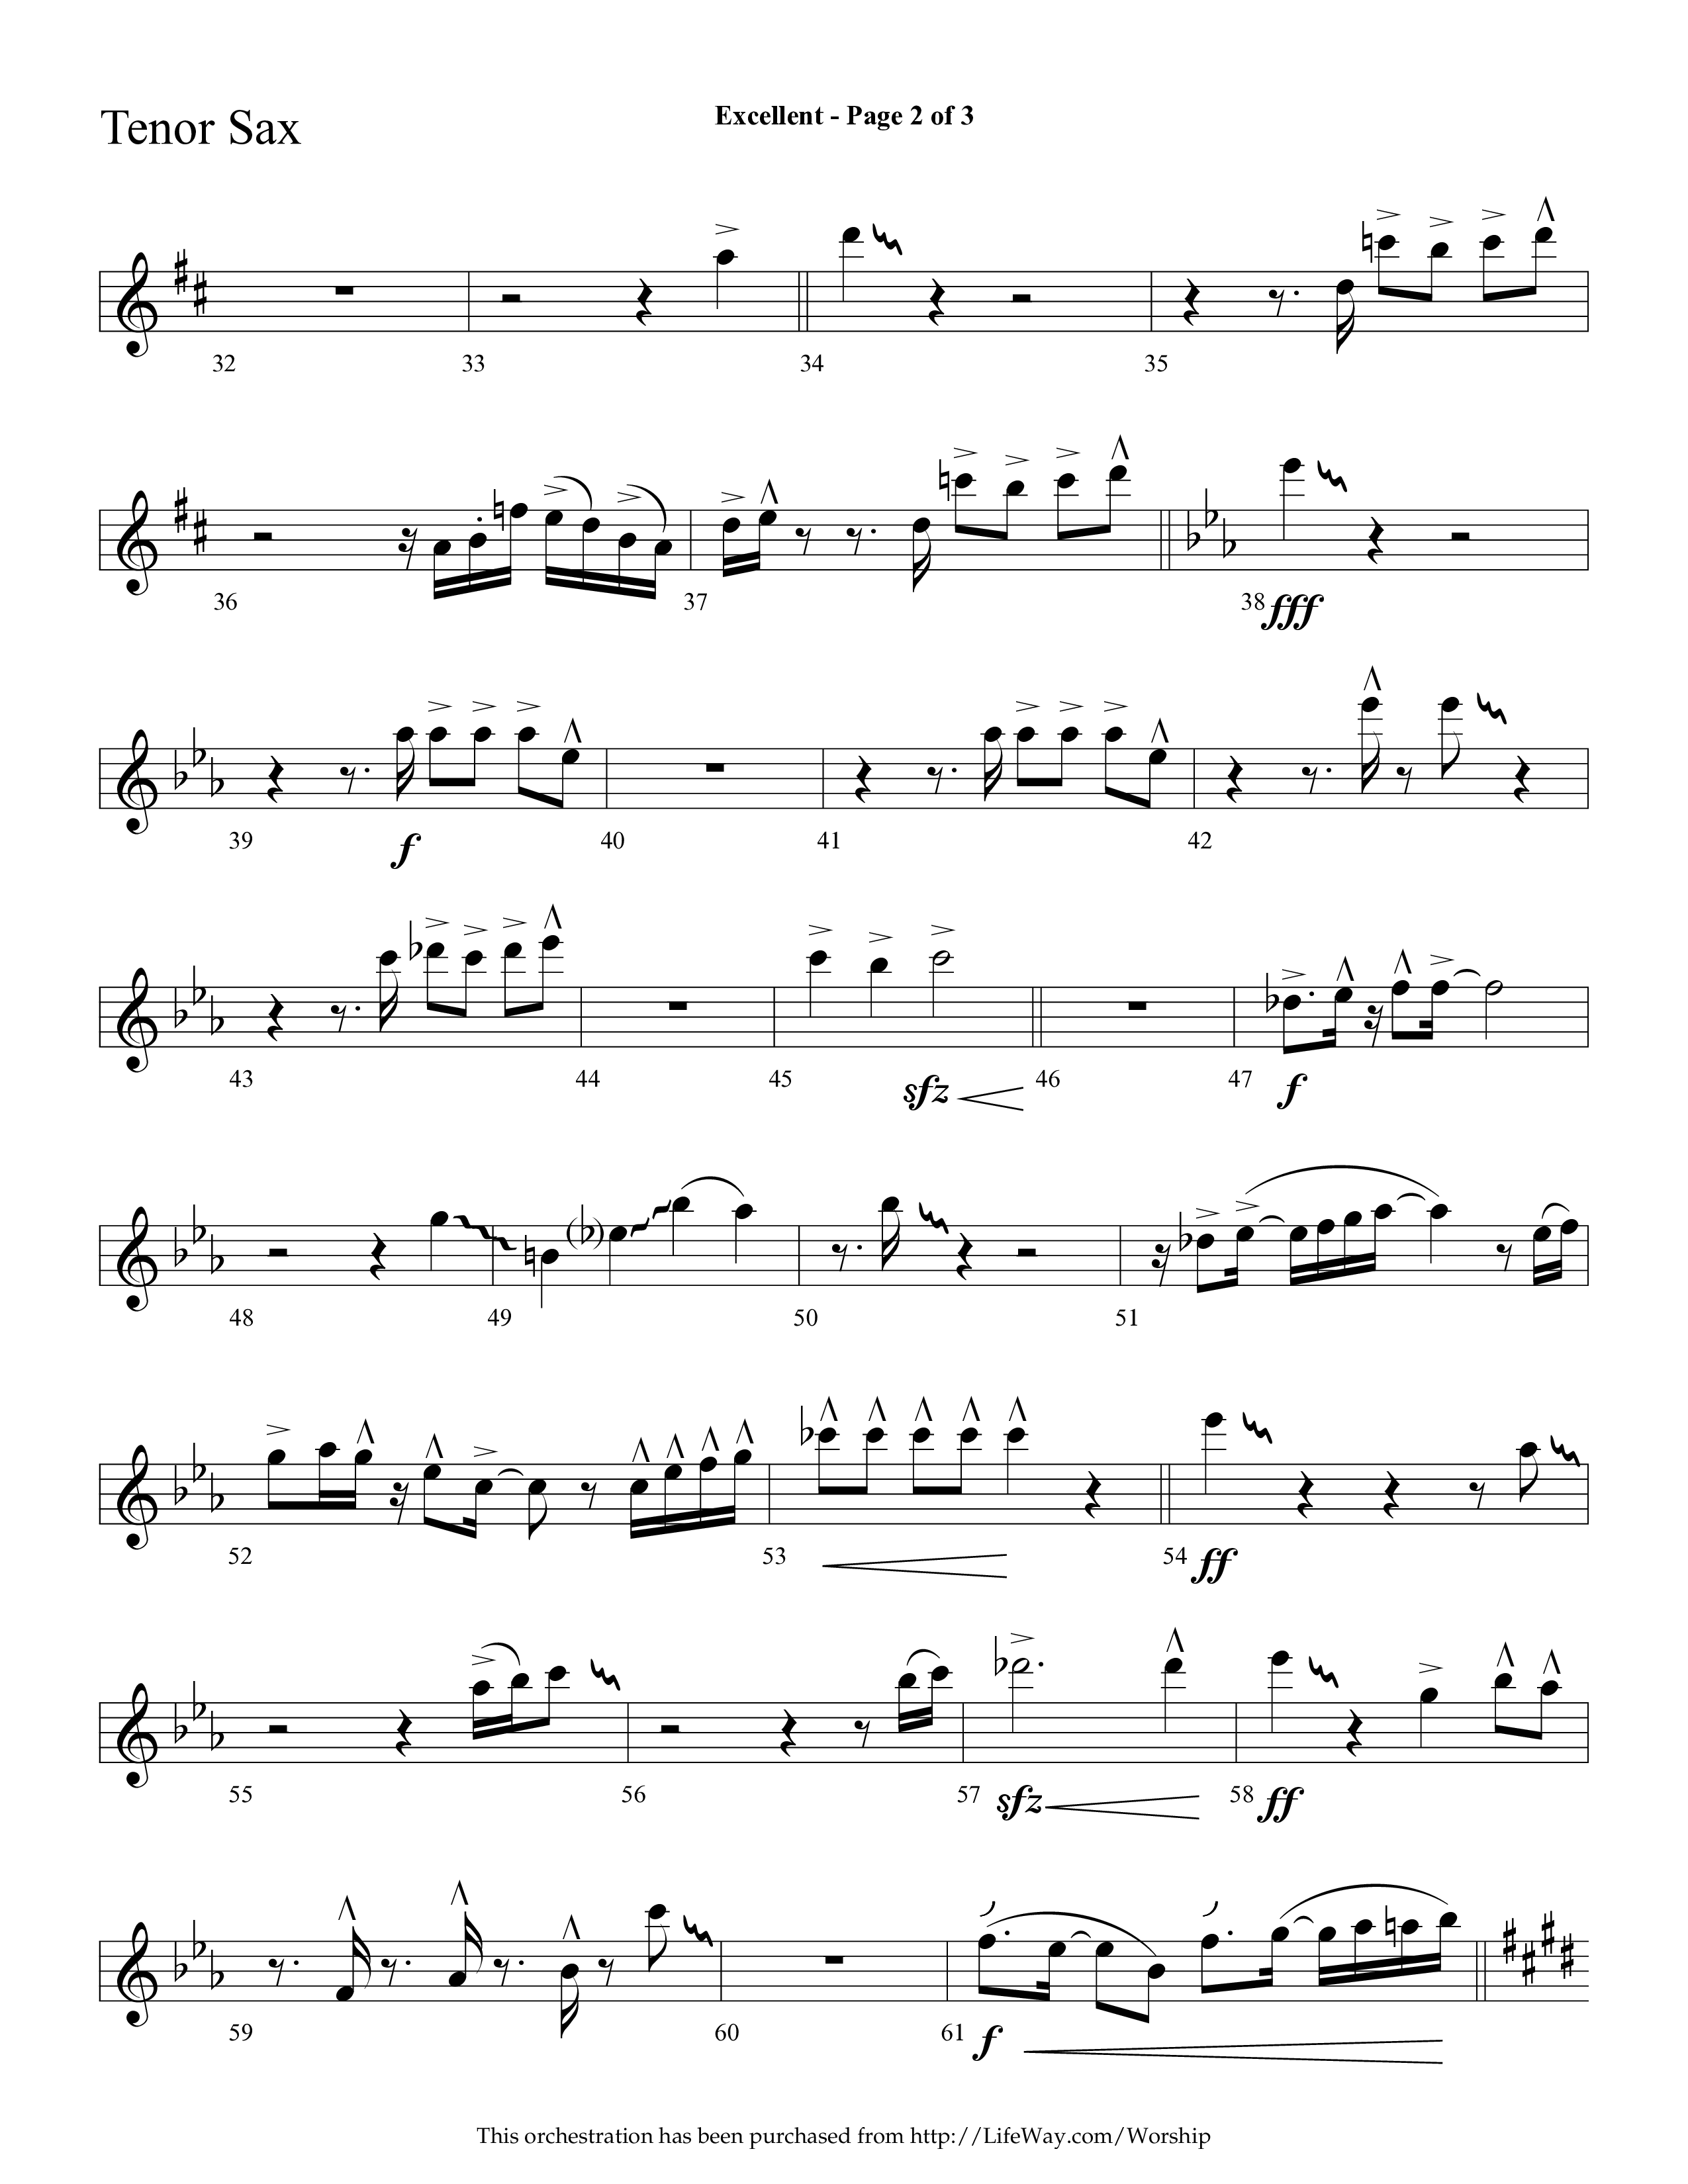 Excellent (Choral Anthem SATB) Tenor Sax 1 (Lifeway Choral / Arr. Cliff Duren)